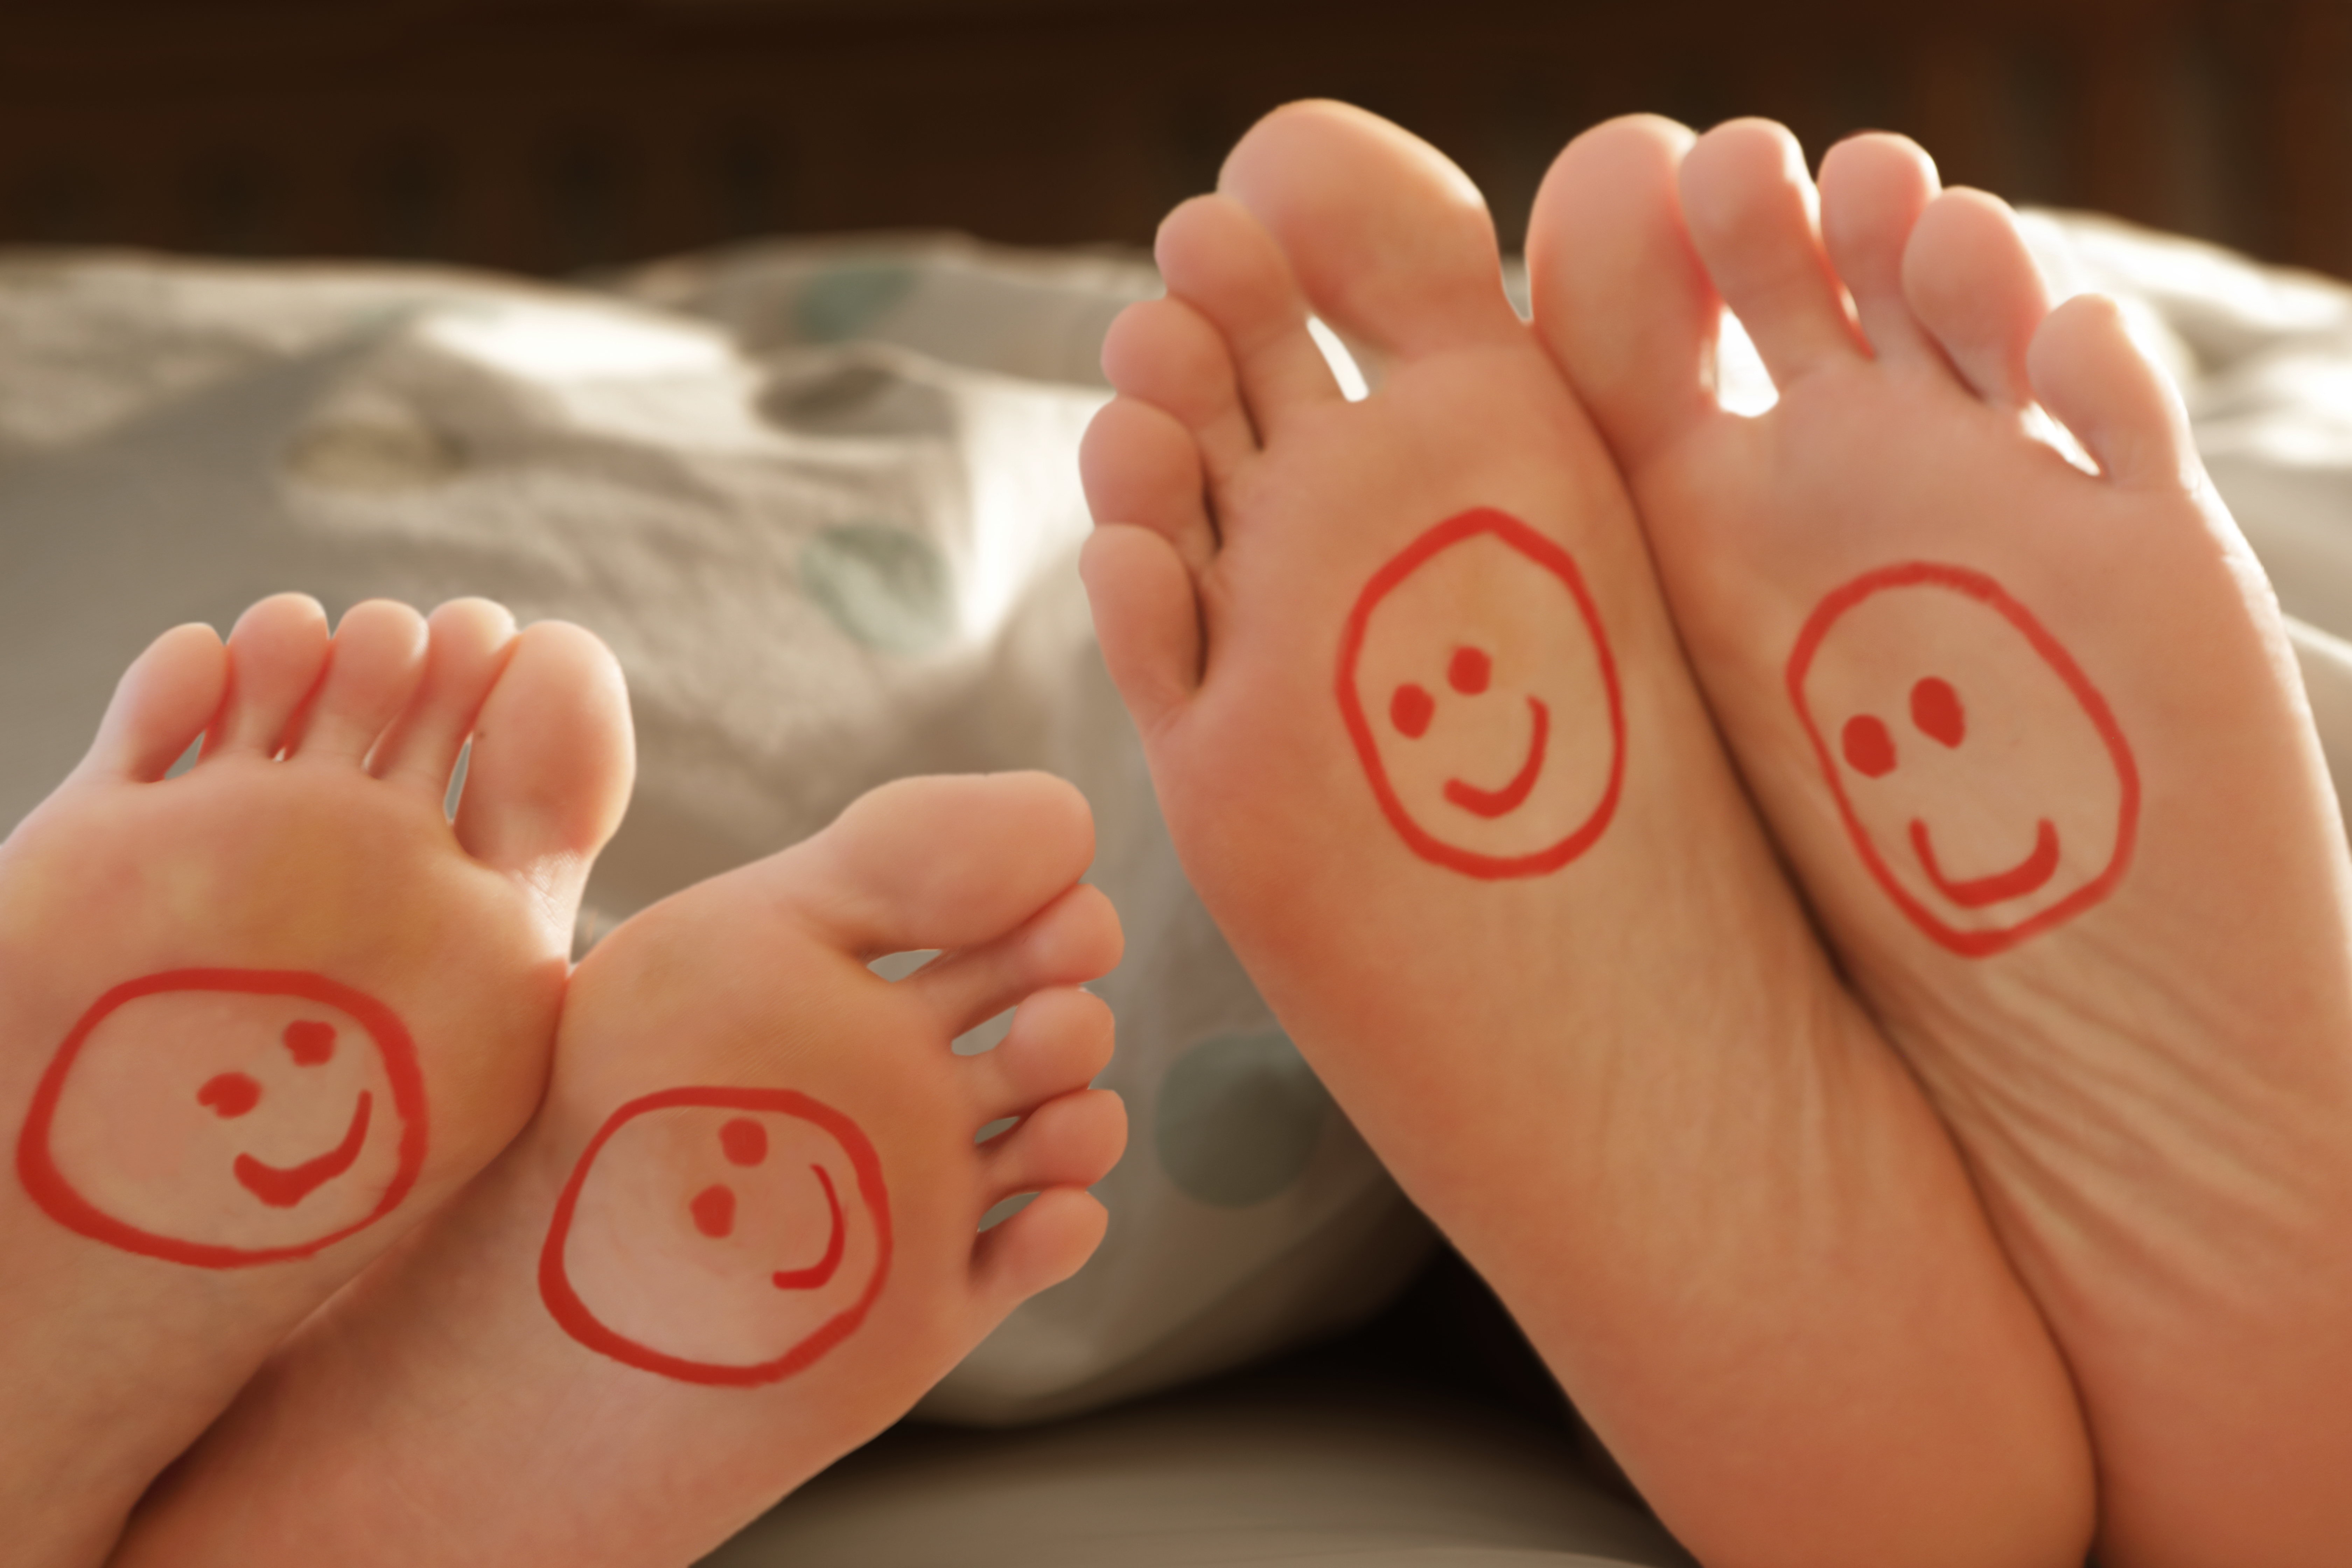 Dormir en pareja reduce el estrés y genera un descanso de mayor calidad,  según la ciencia - Infobae